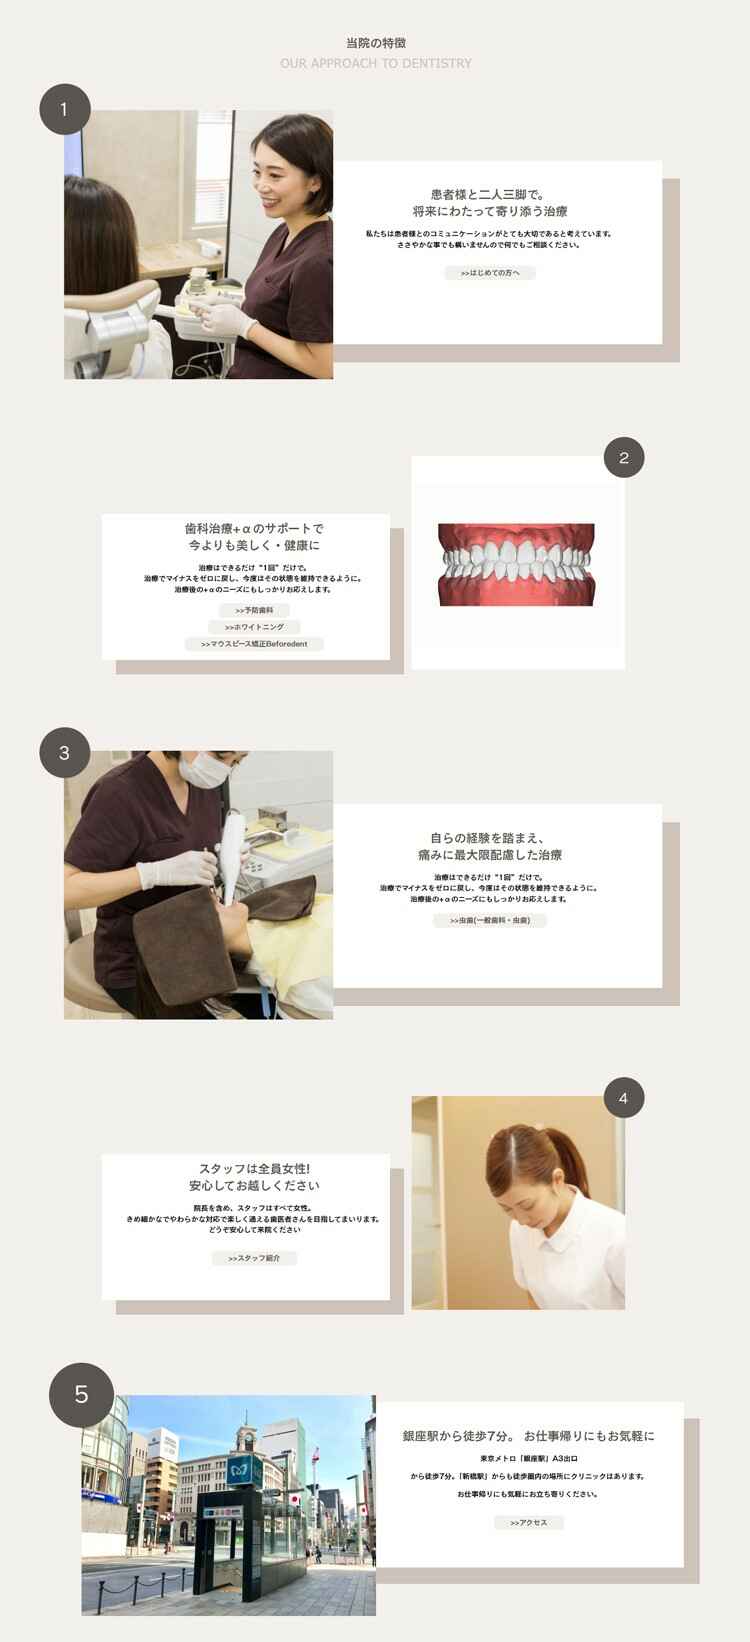 銀座・新橋駅前歯医者矯正歯科のお知らせ内容